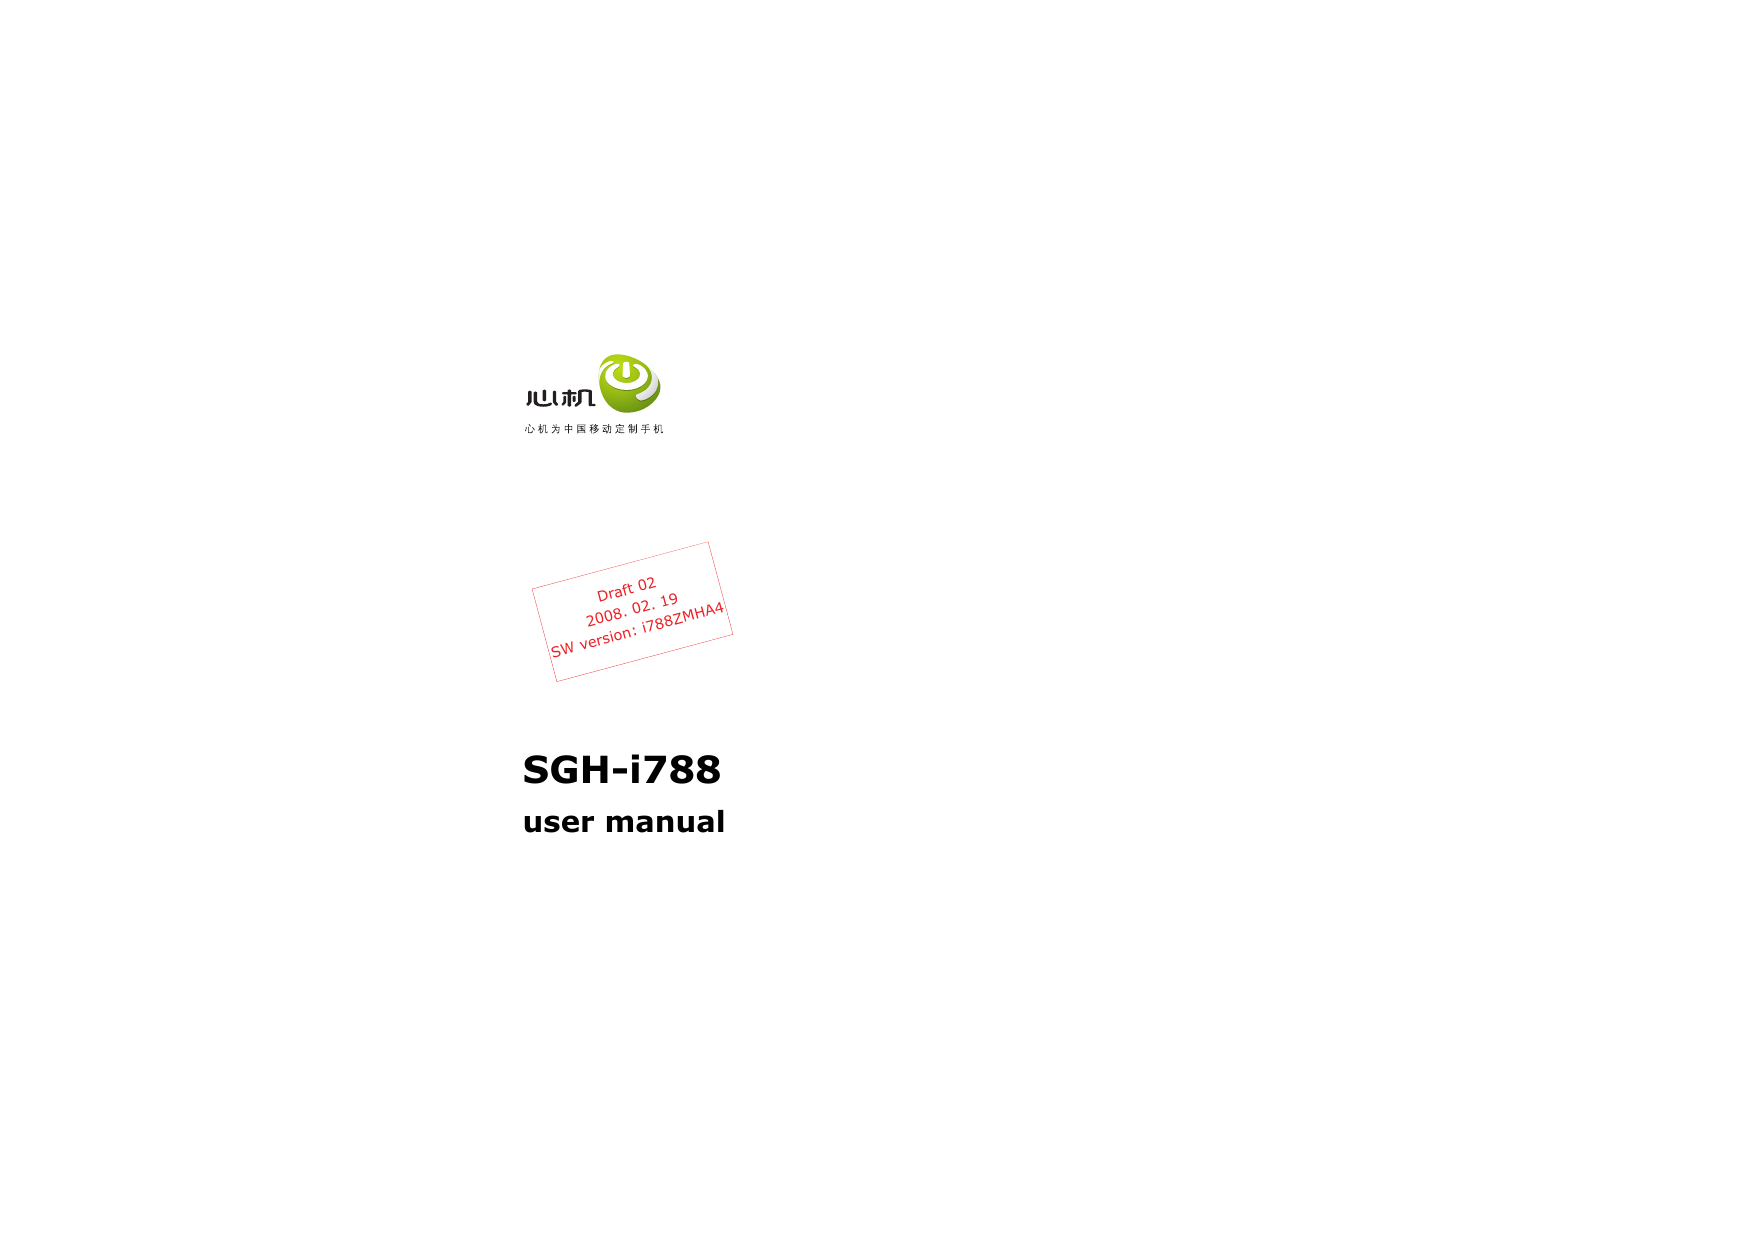 SGH-i788user manualDraft 022008. 02. 19SW version: i788ZMHA4